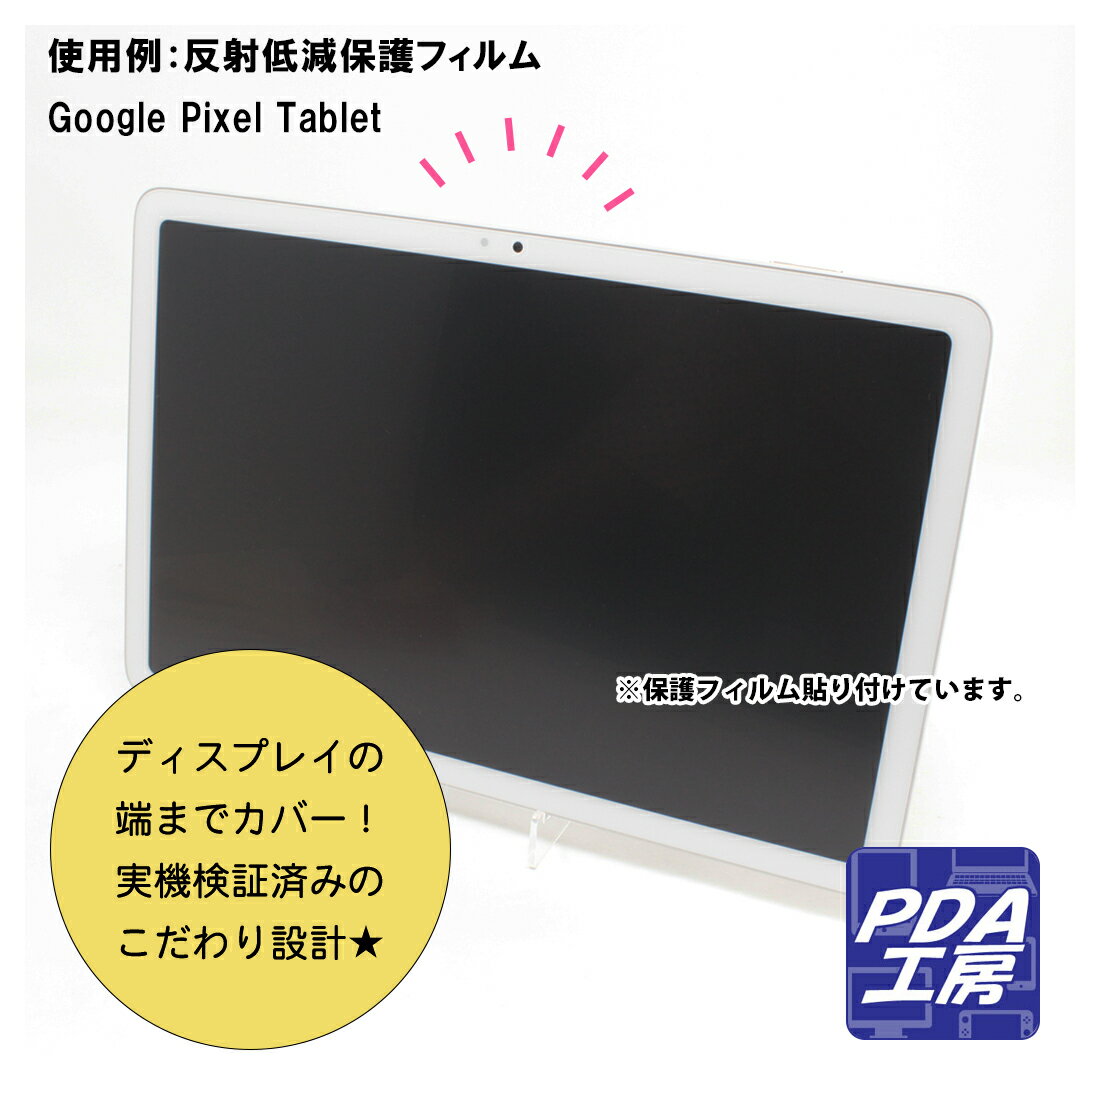 PDA工房 Google Pixel Tablet 対応 9H高硬度[光沢] 保護 フィルム 日本製 自社製造直販 3